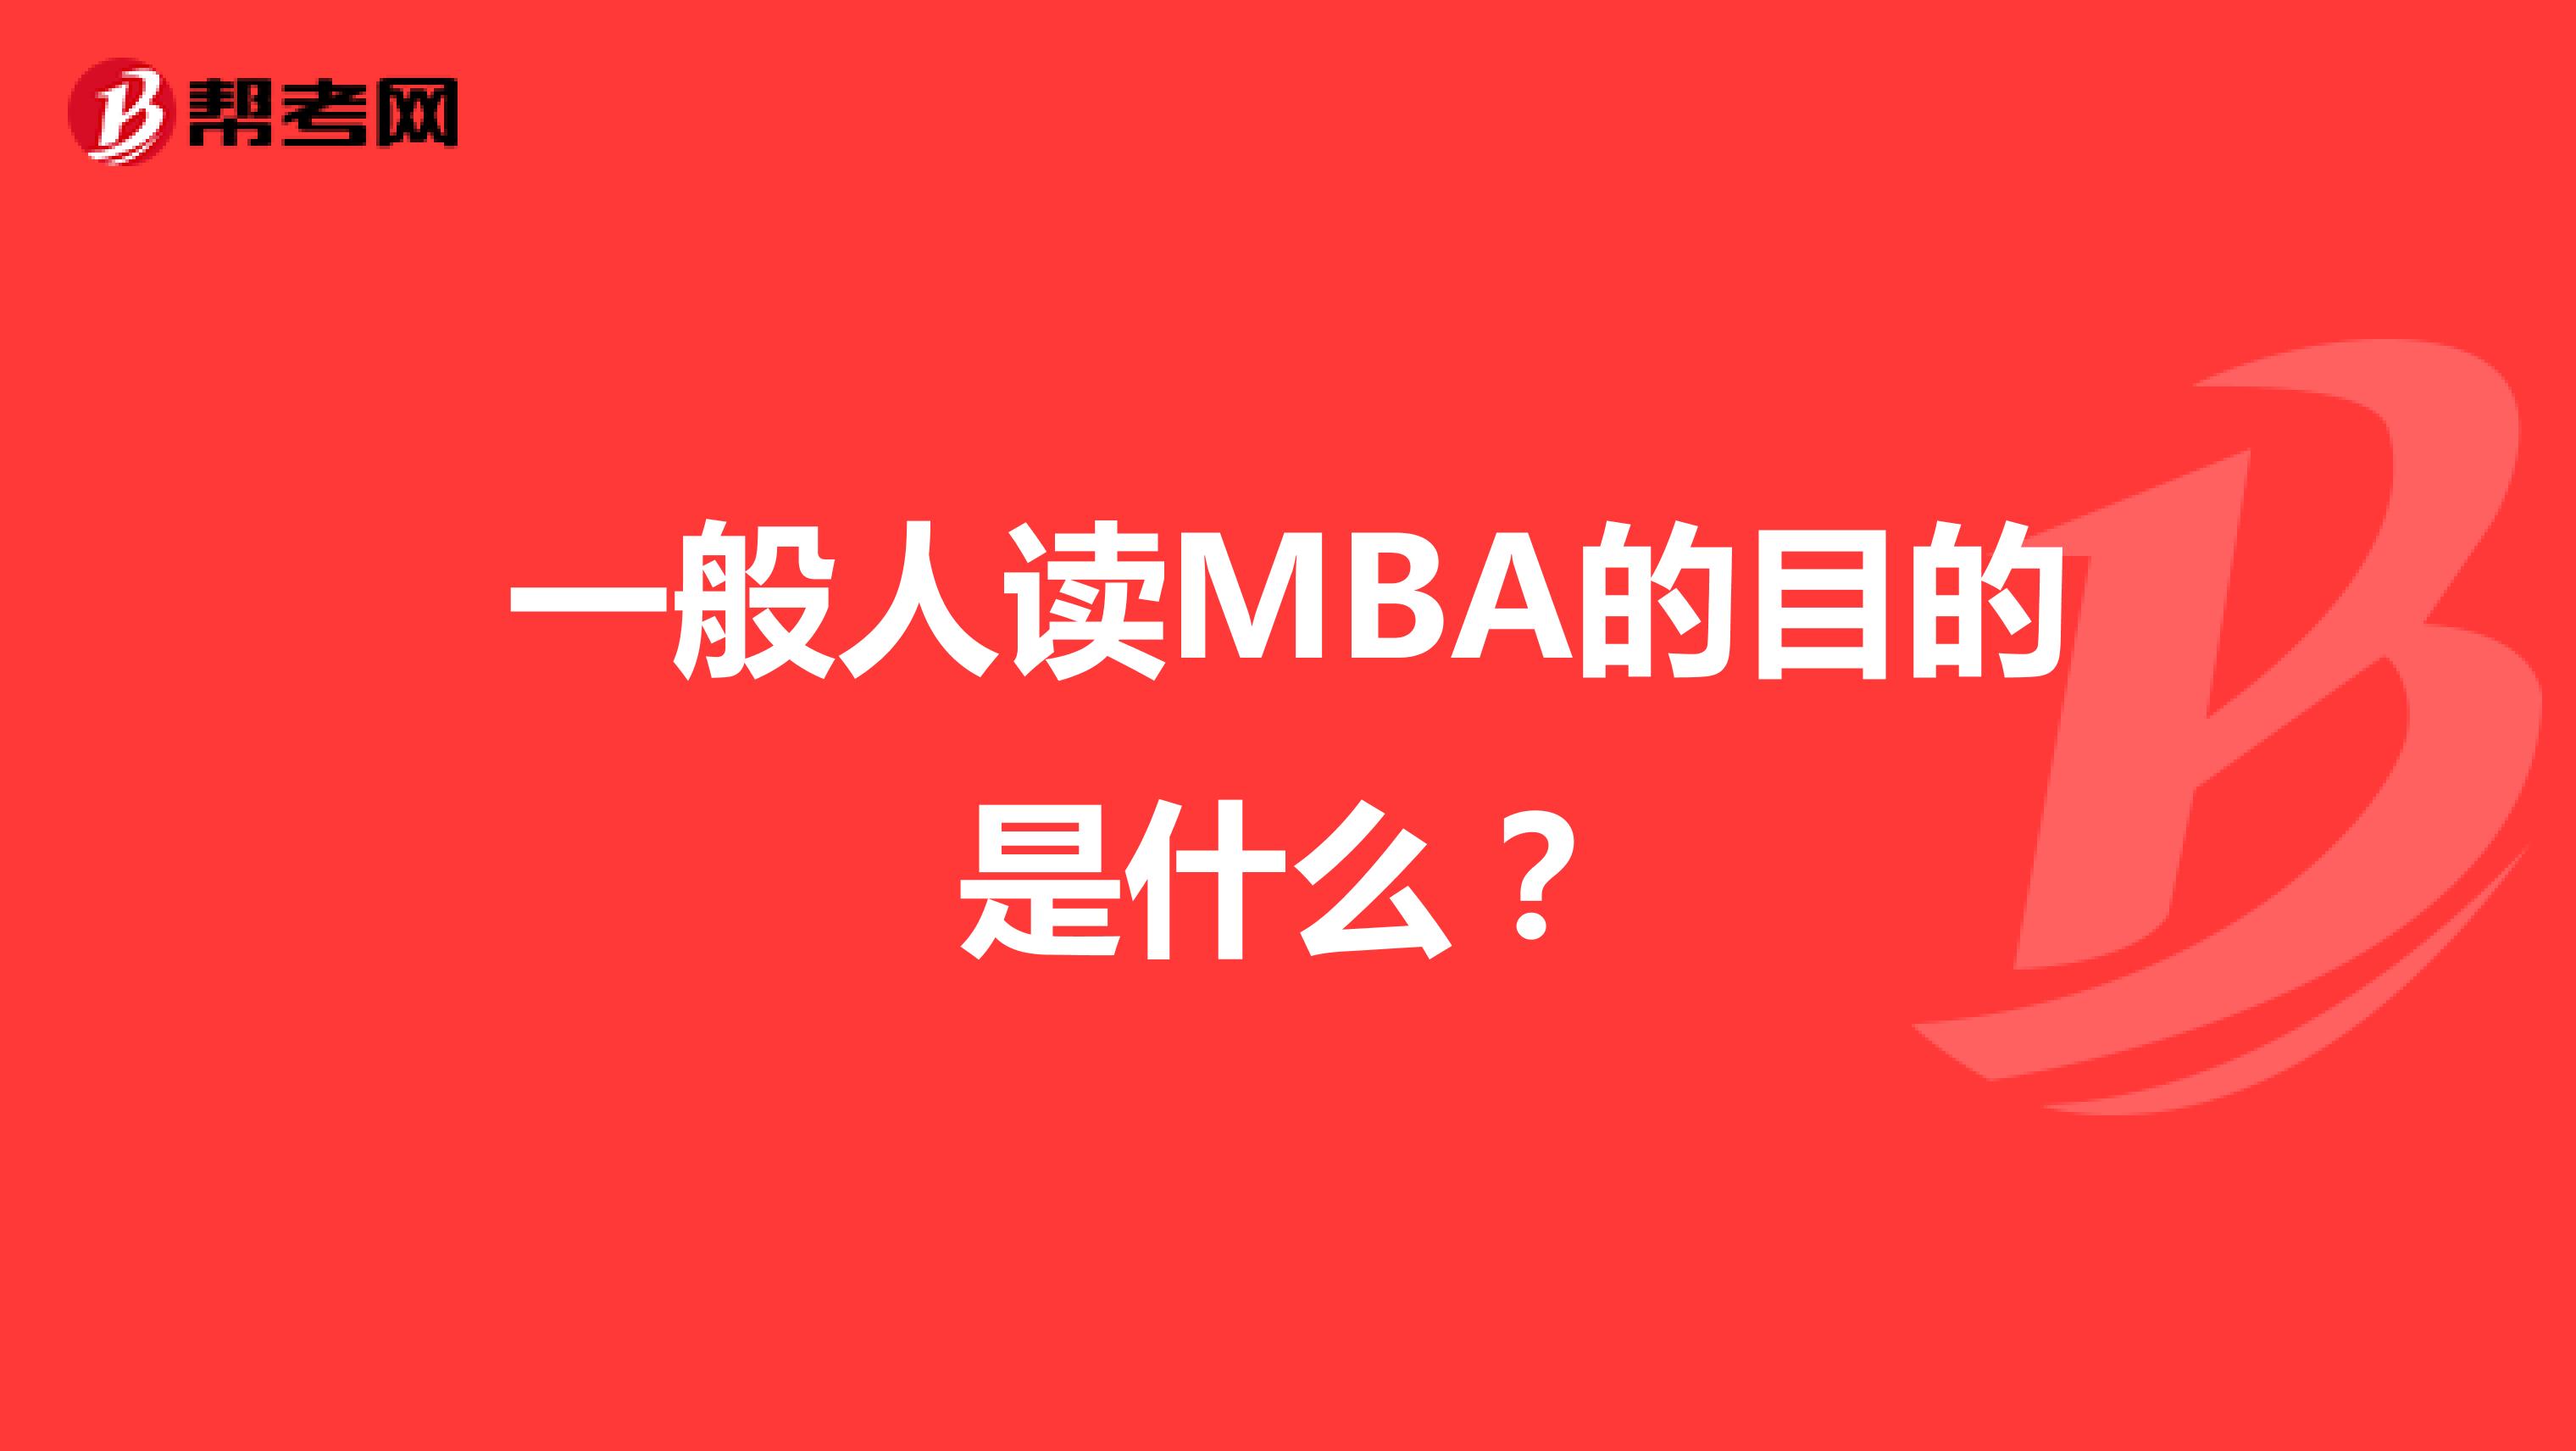 一般人读MBA的目的是什么？